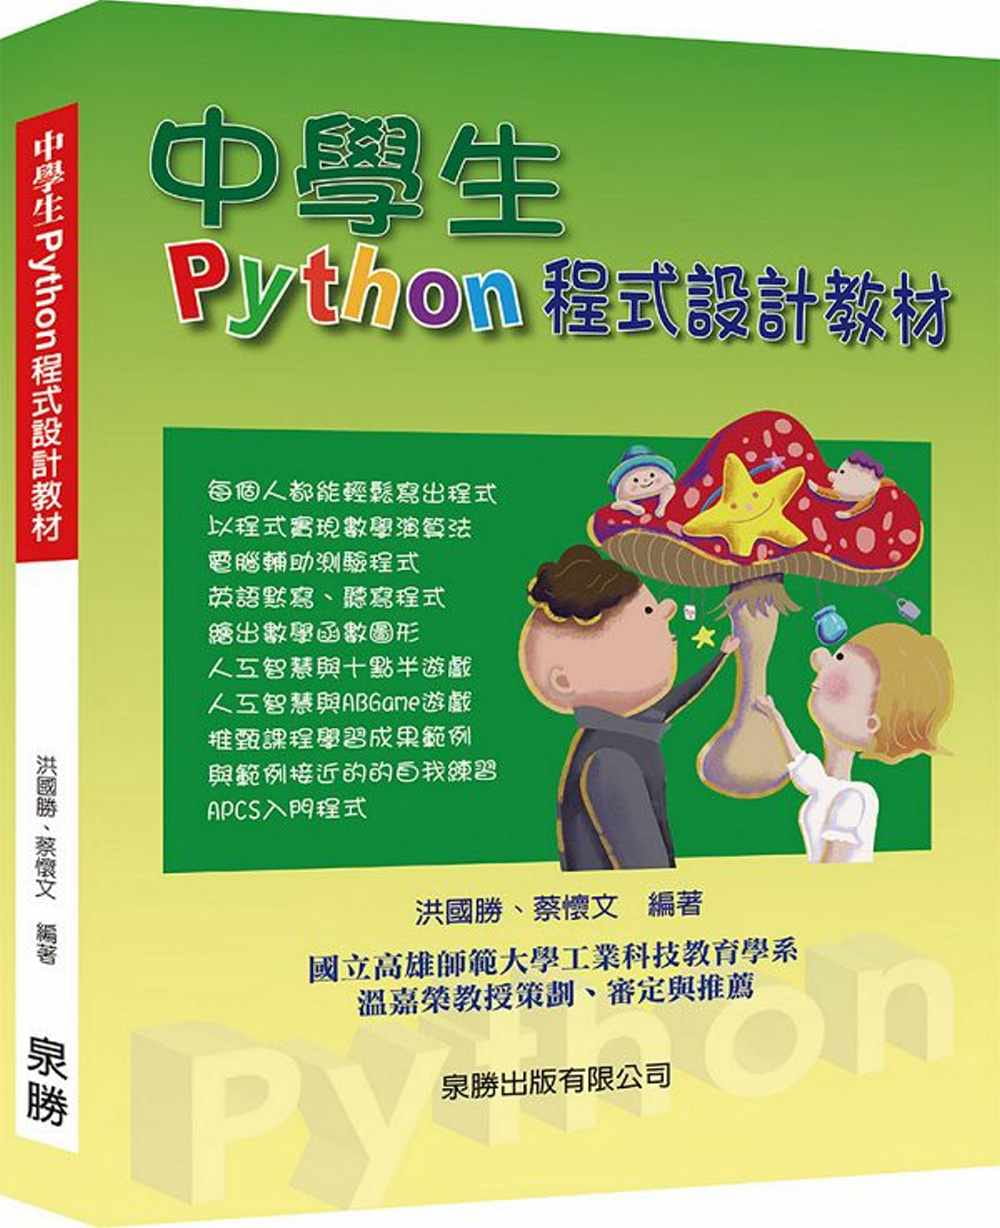 中學生Python程式設計教材